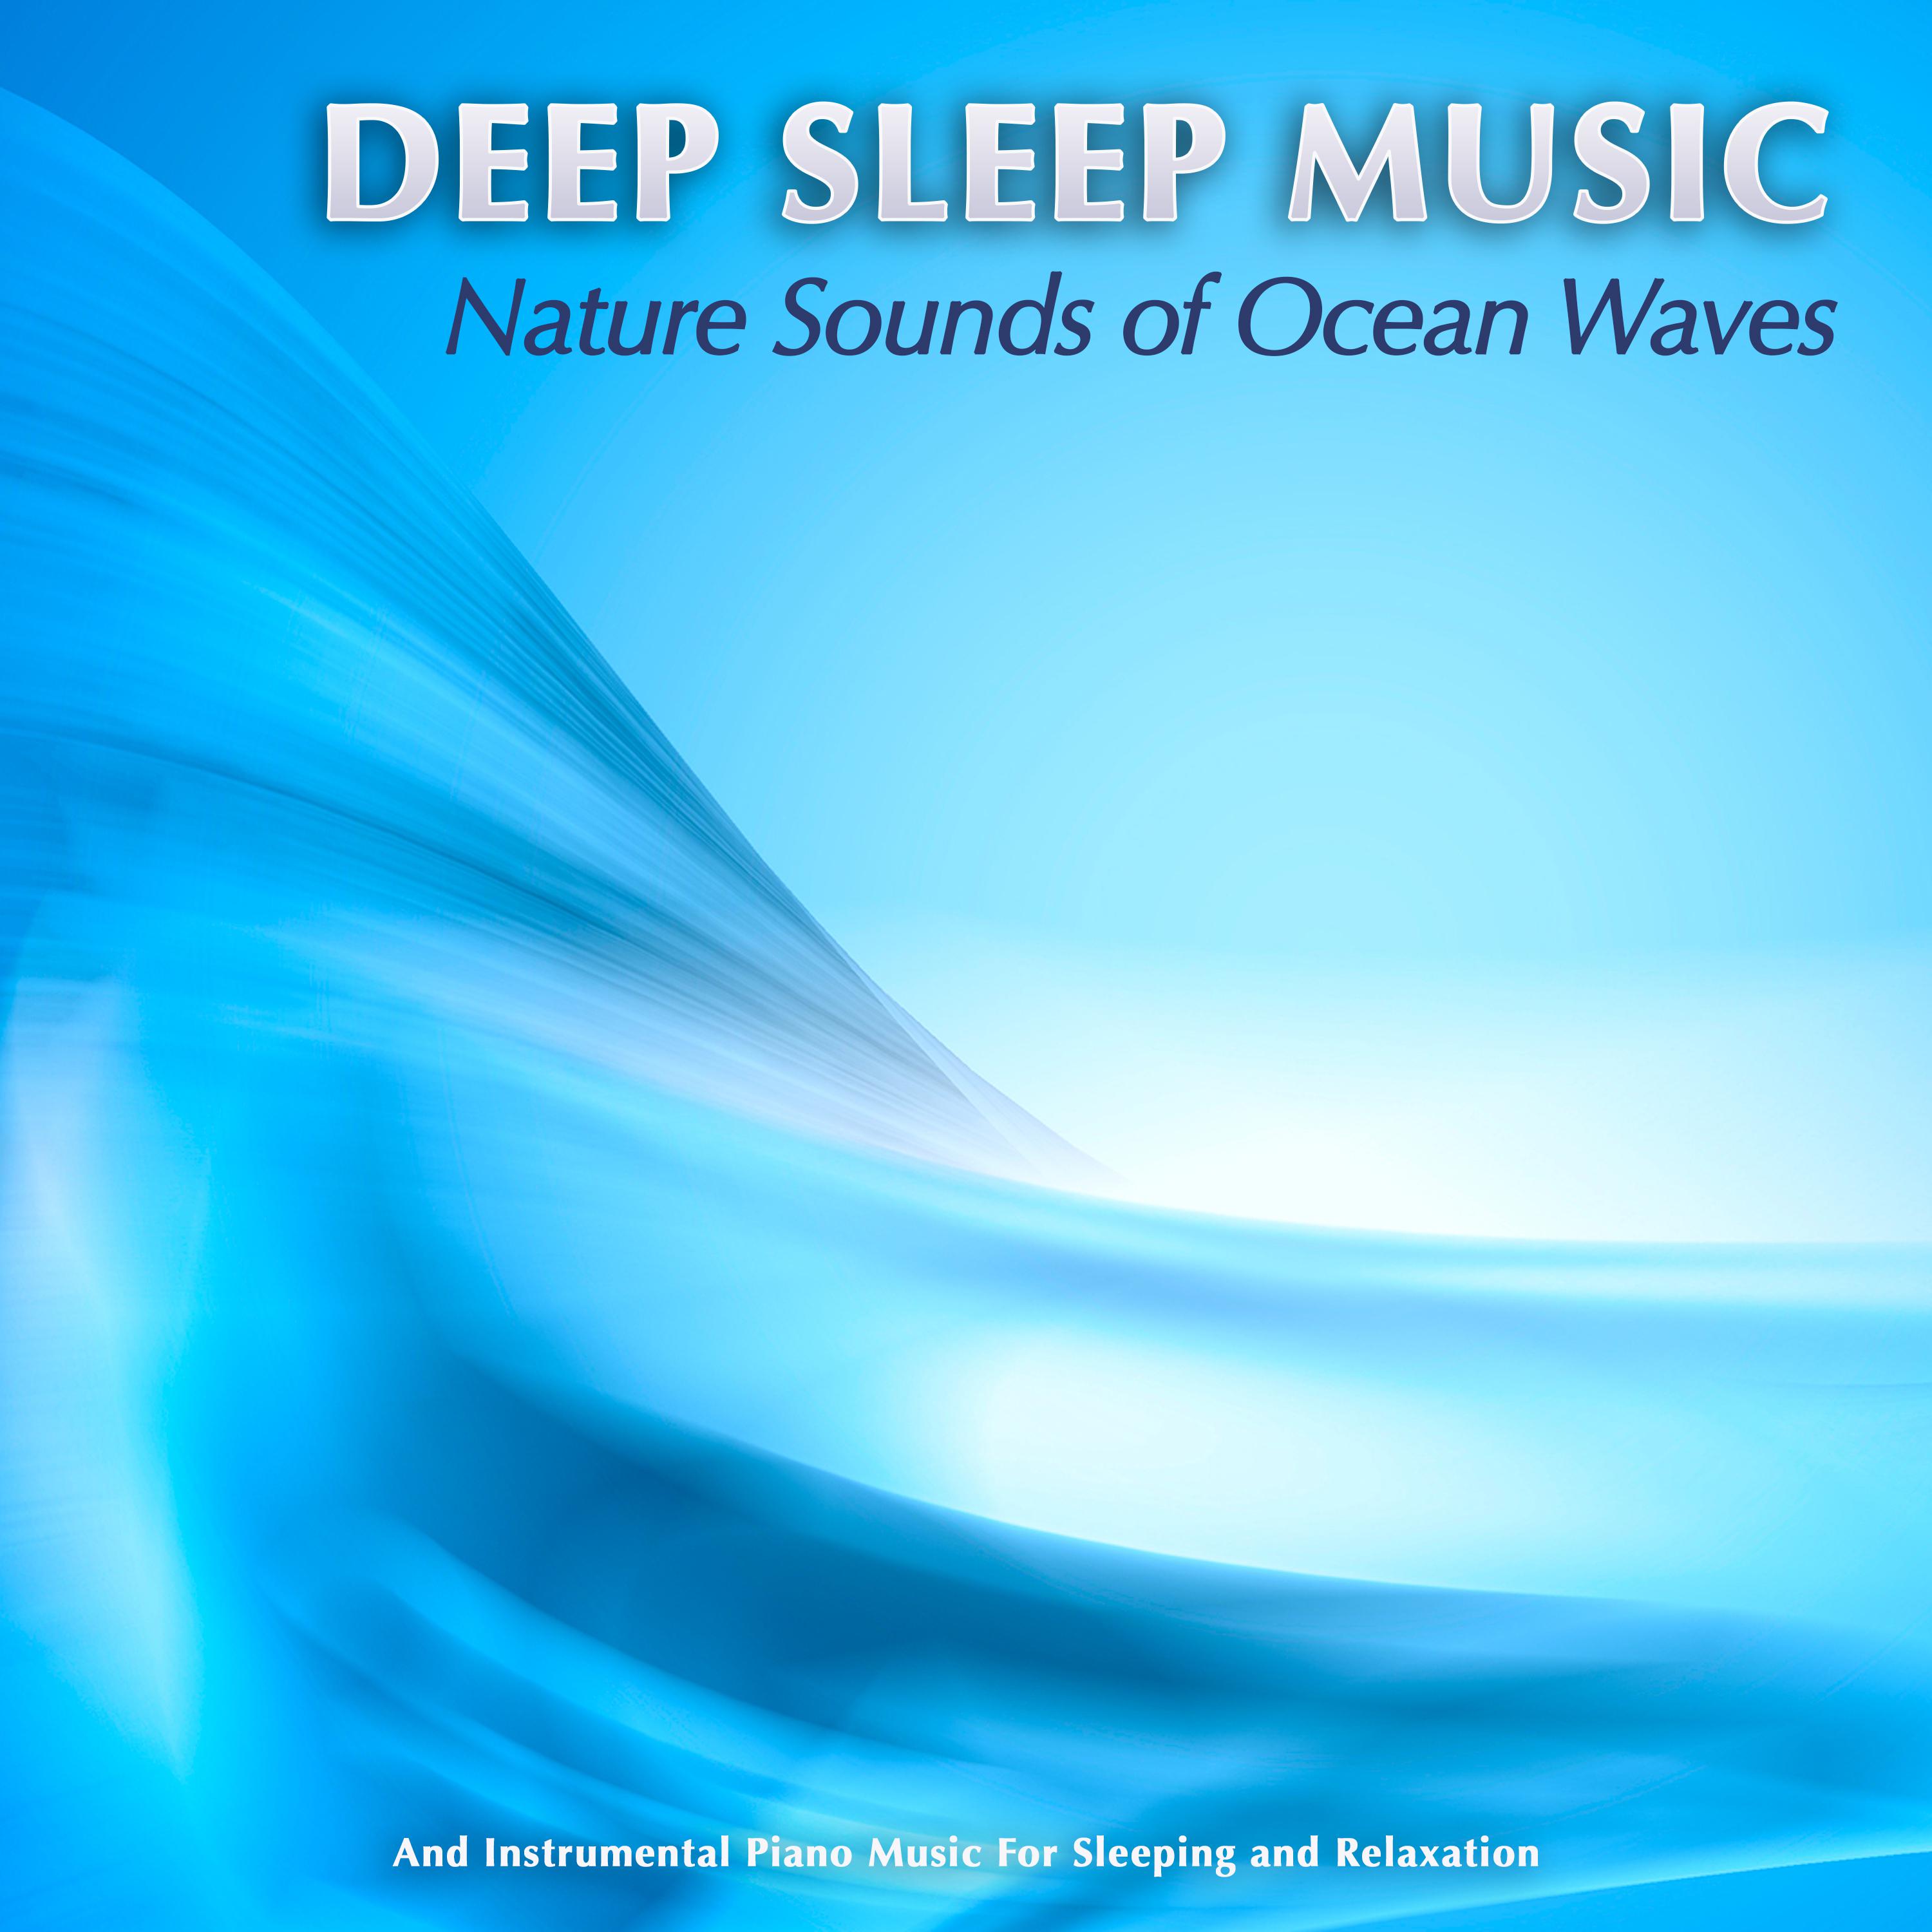 Sleep Music with Relaxing Ocean Waves